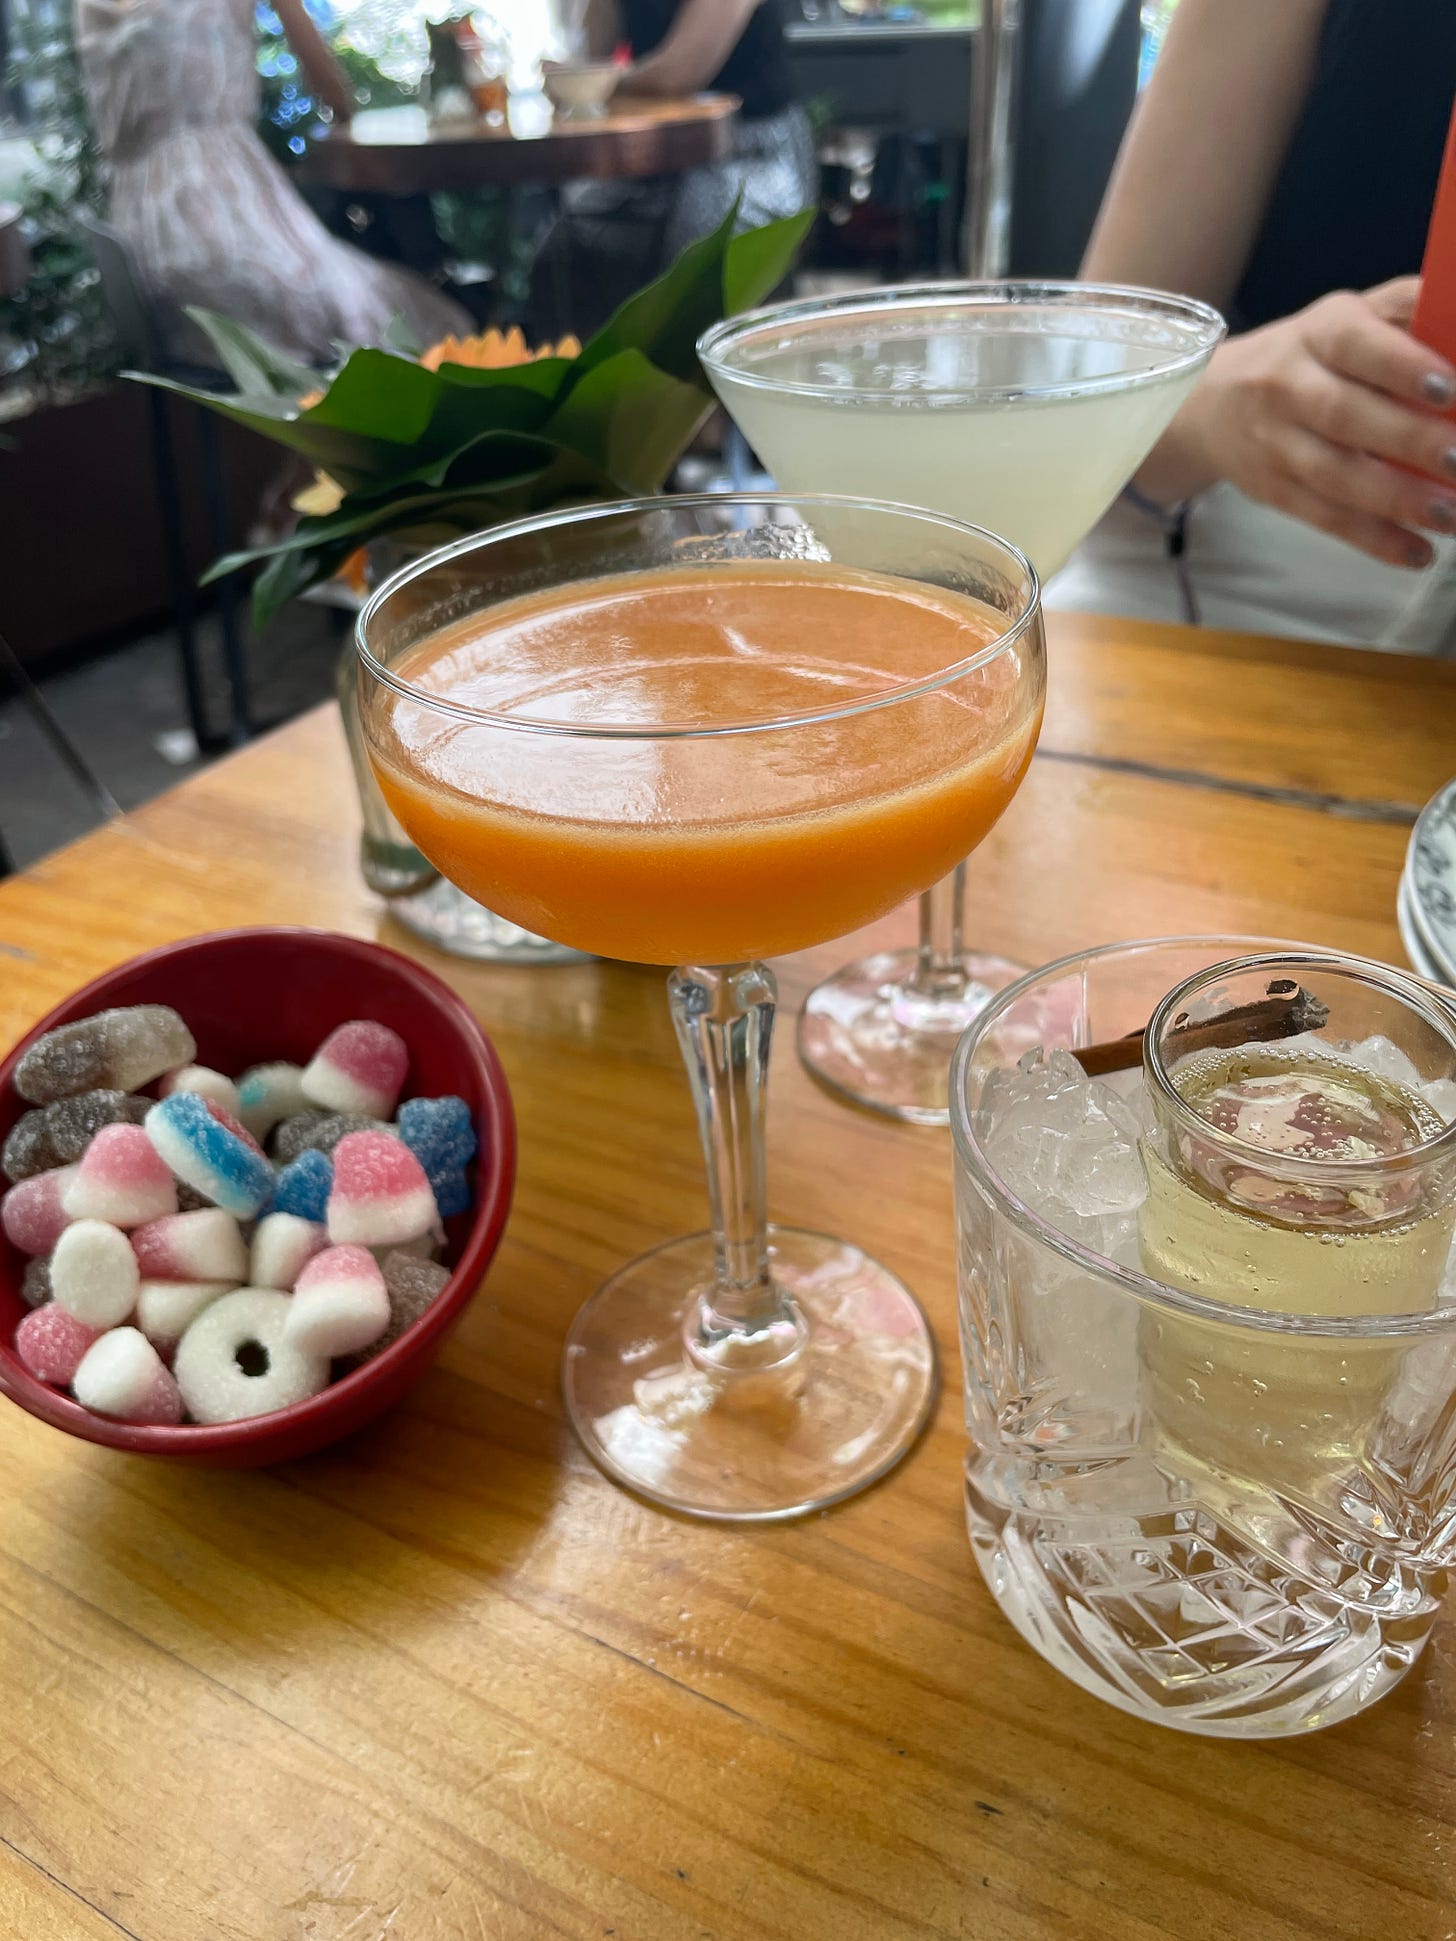 Nossa mesa de bar no museu Reina Sofia: porn star martini é servido numa taça coupé e é uma bebida alaranjada, parece um suco. O aviation é servido numa taça martini e tem cara de limonada, com uma calda bem violeta no fundo. 